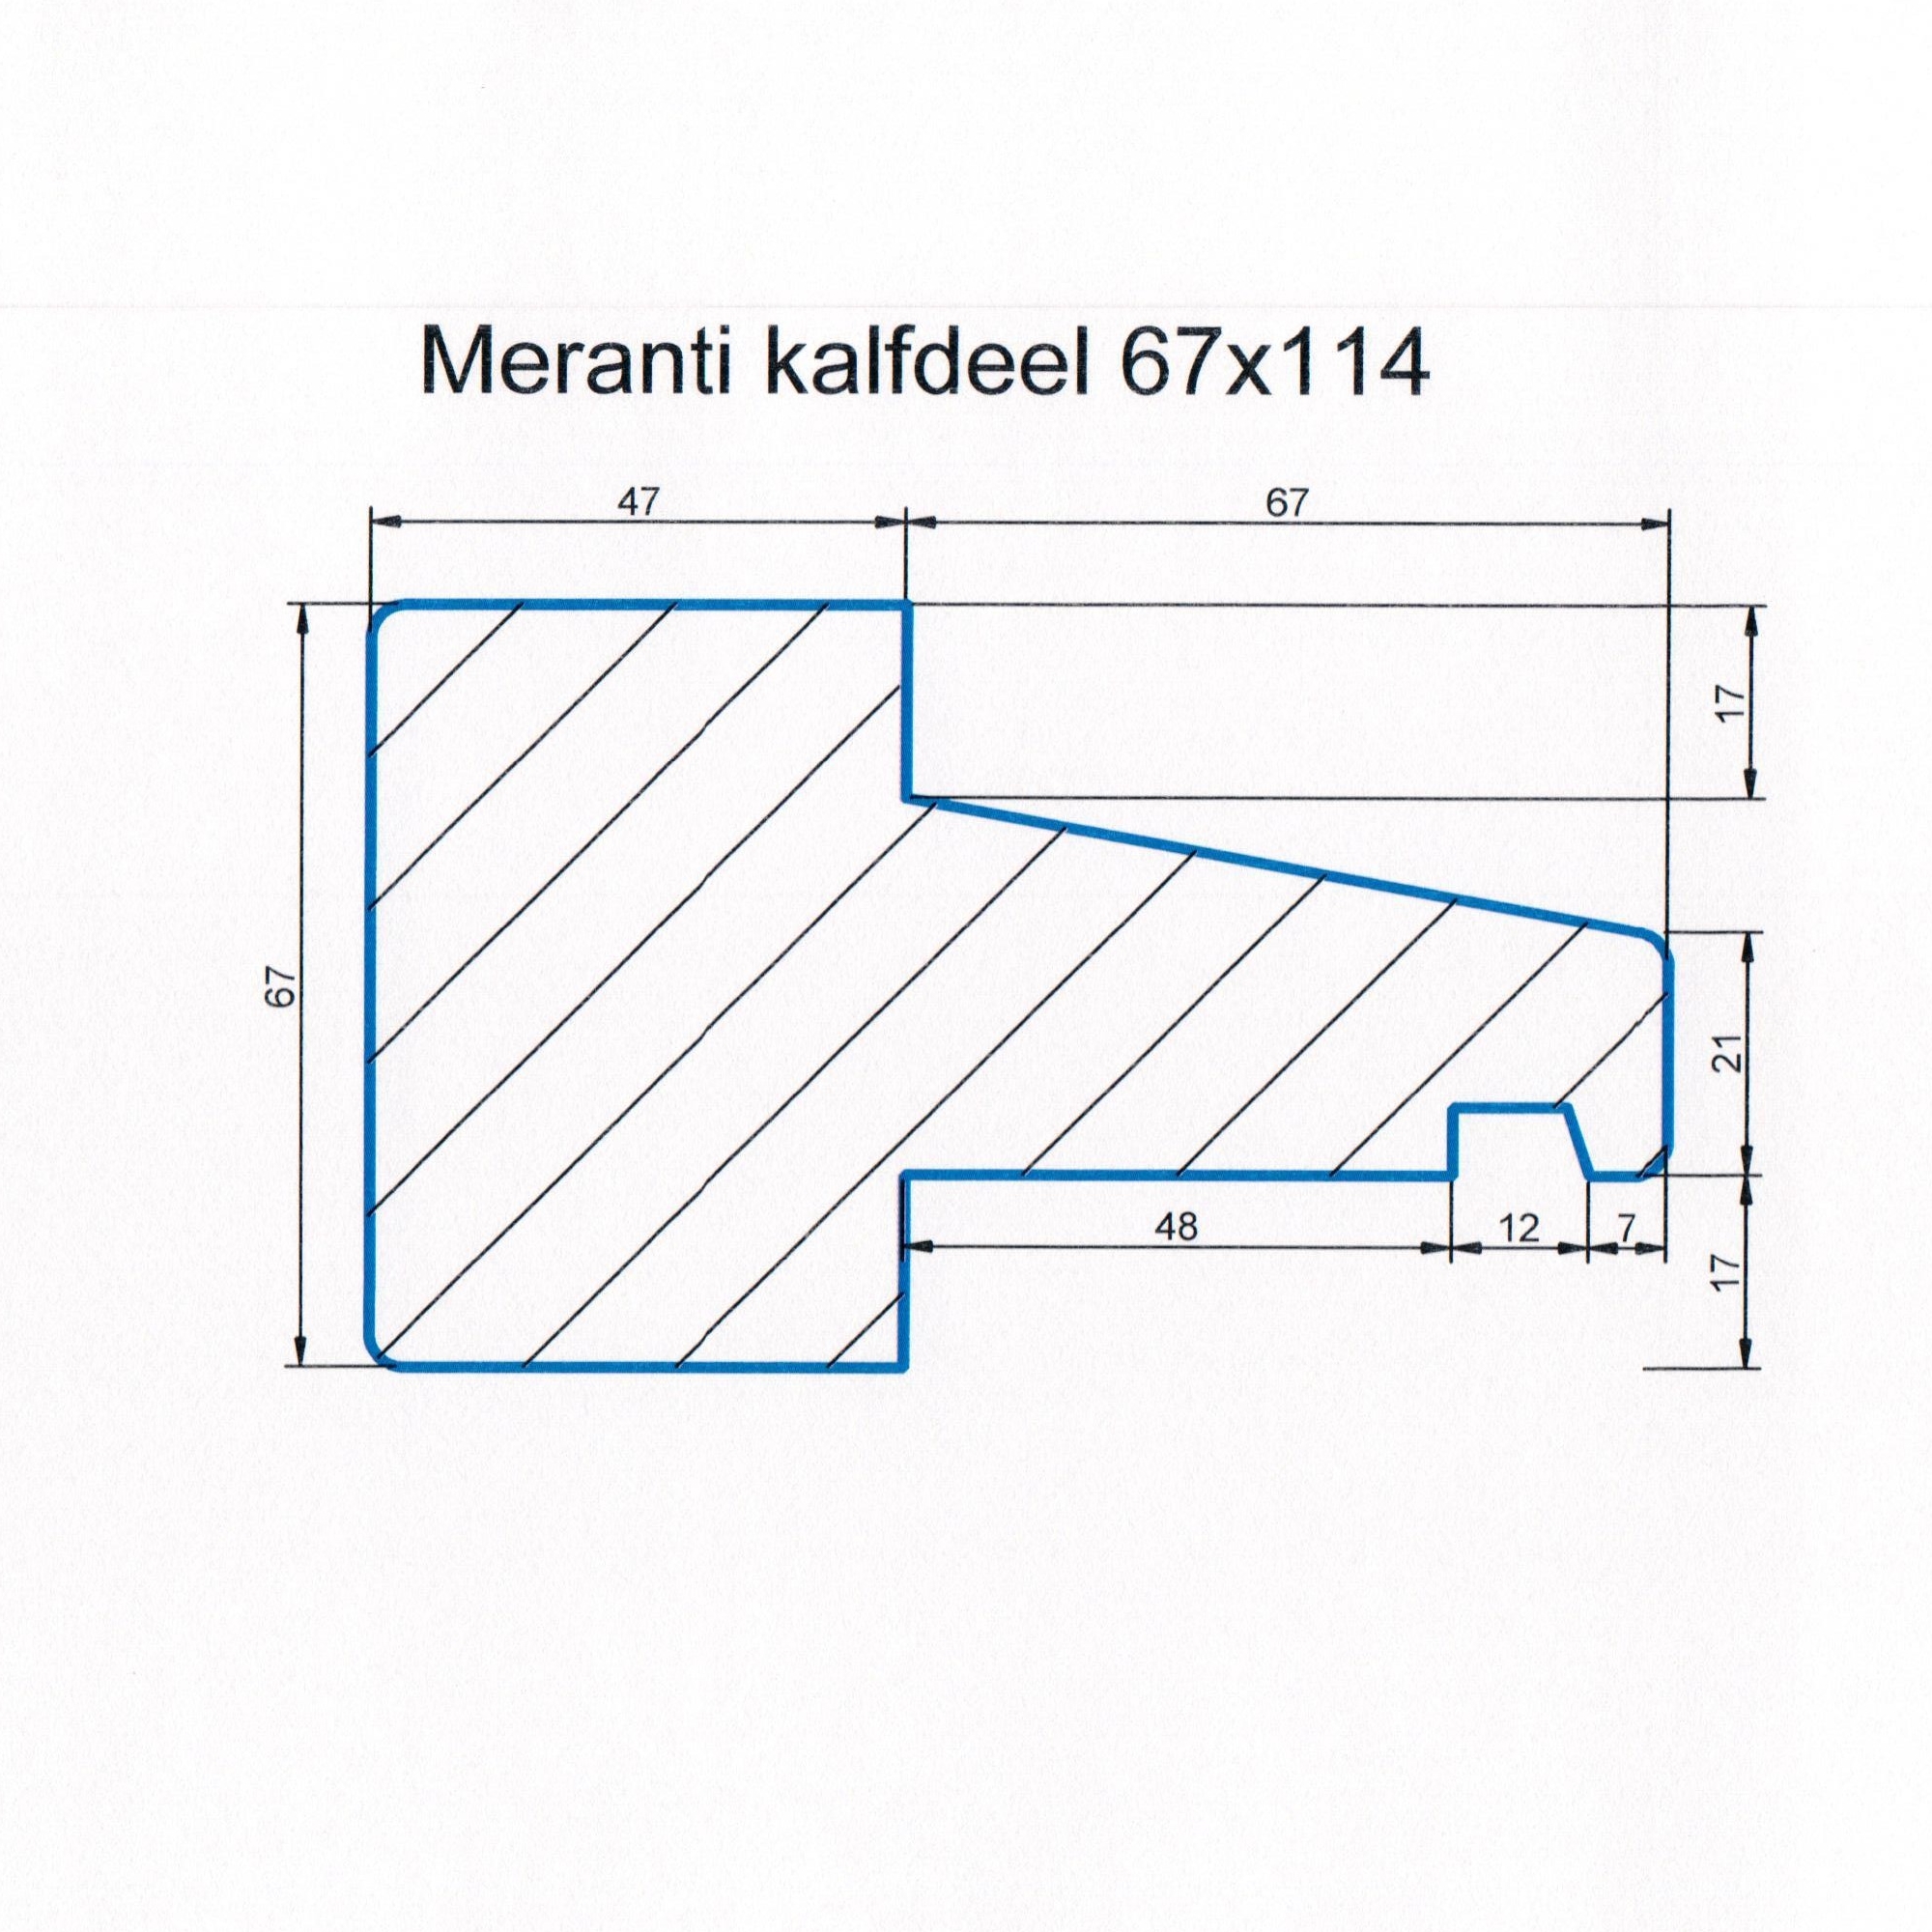 Meranti 67x114 kozijnhout Kalfdeel L=2450 mm